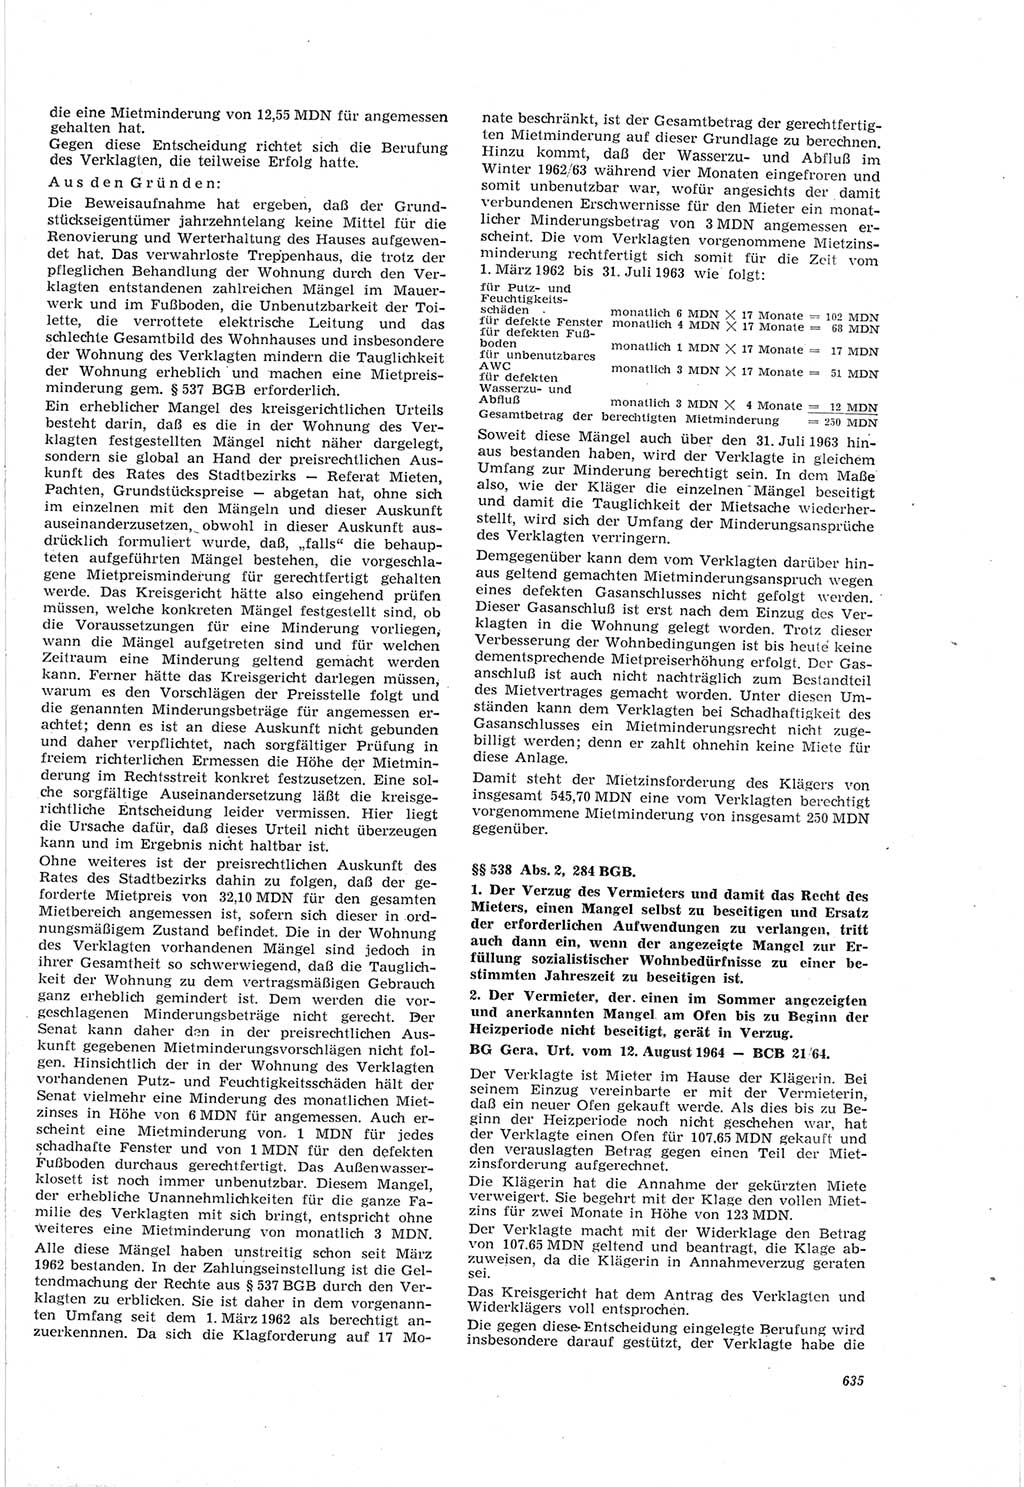 Neue Justiz (NJ), Zeitschrift für Recht und Rechtswissenschaft [Deutsche Demokratische Republik (DDR)], 18. Jahrgang 1964, Seite 635 (NJ DDR 1964, S. 635)